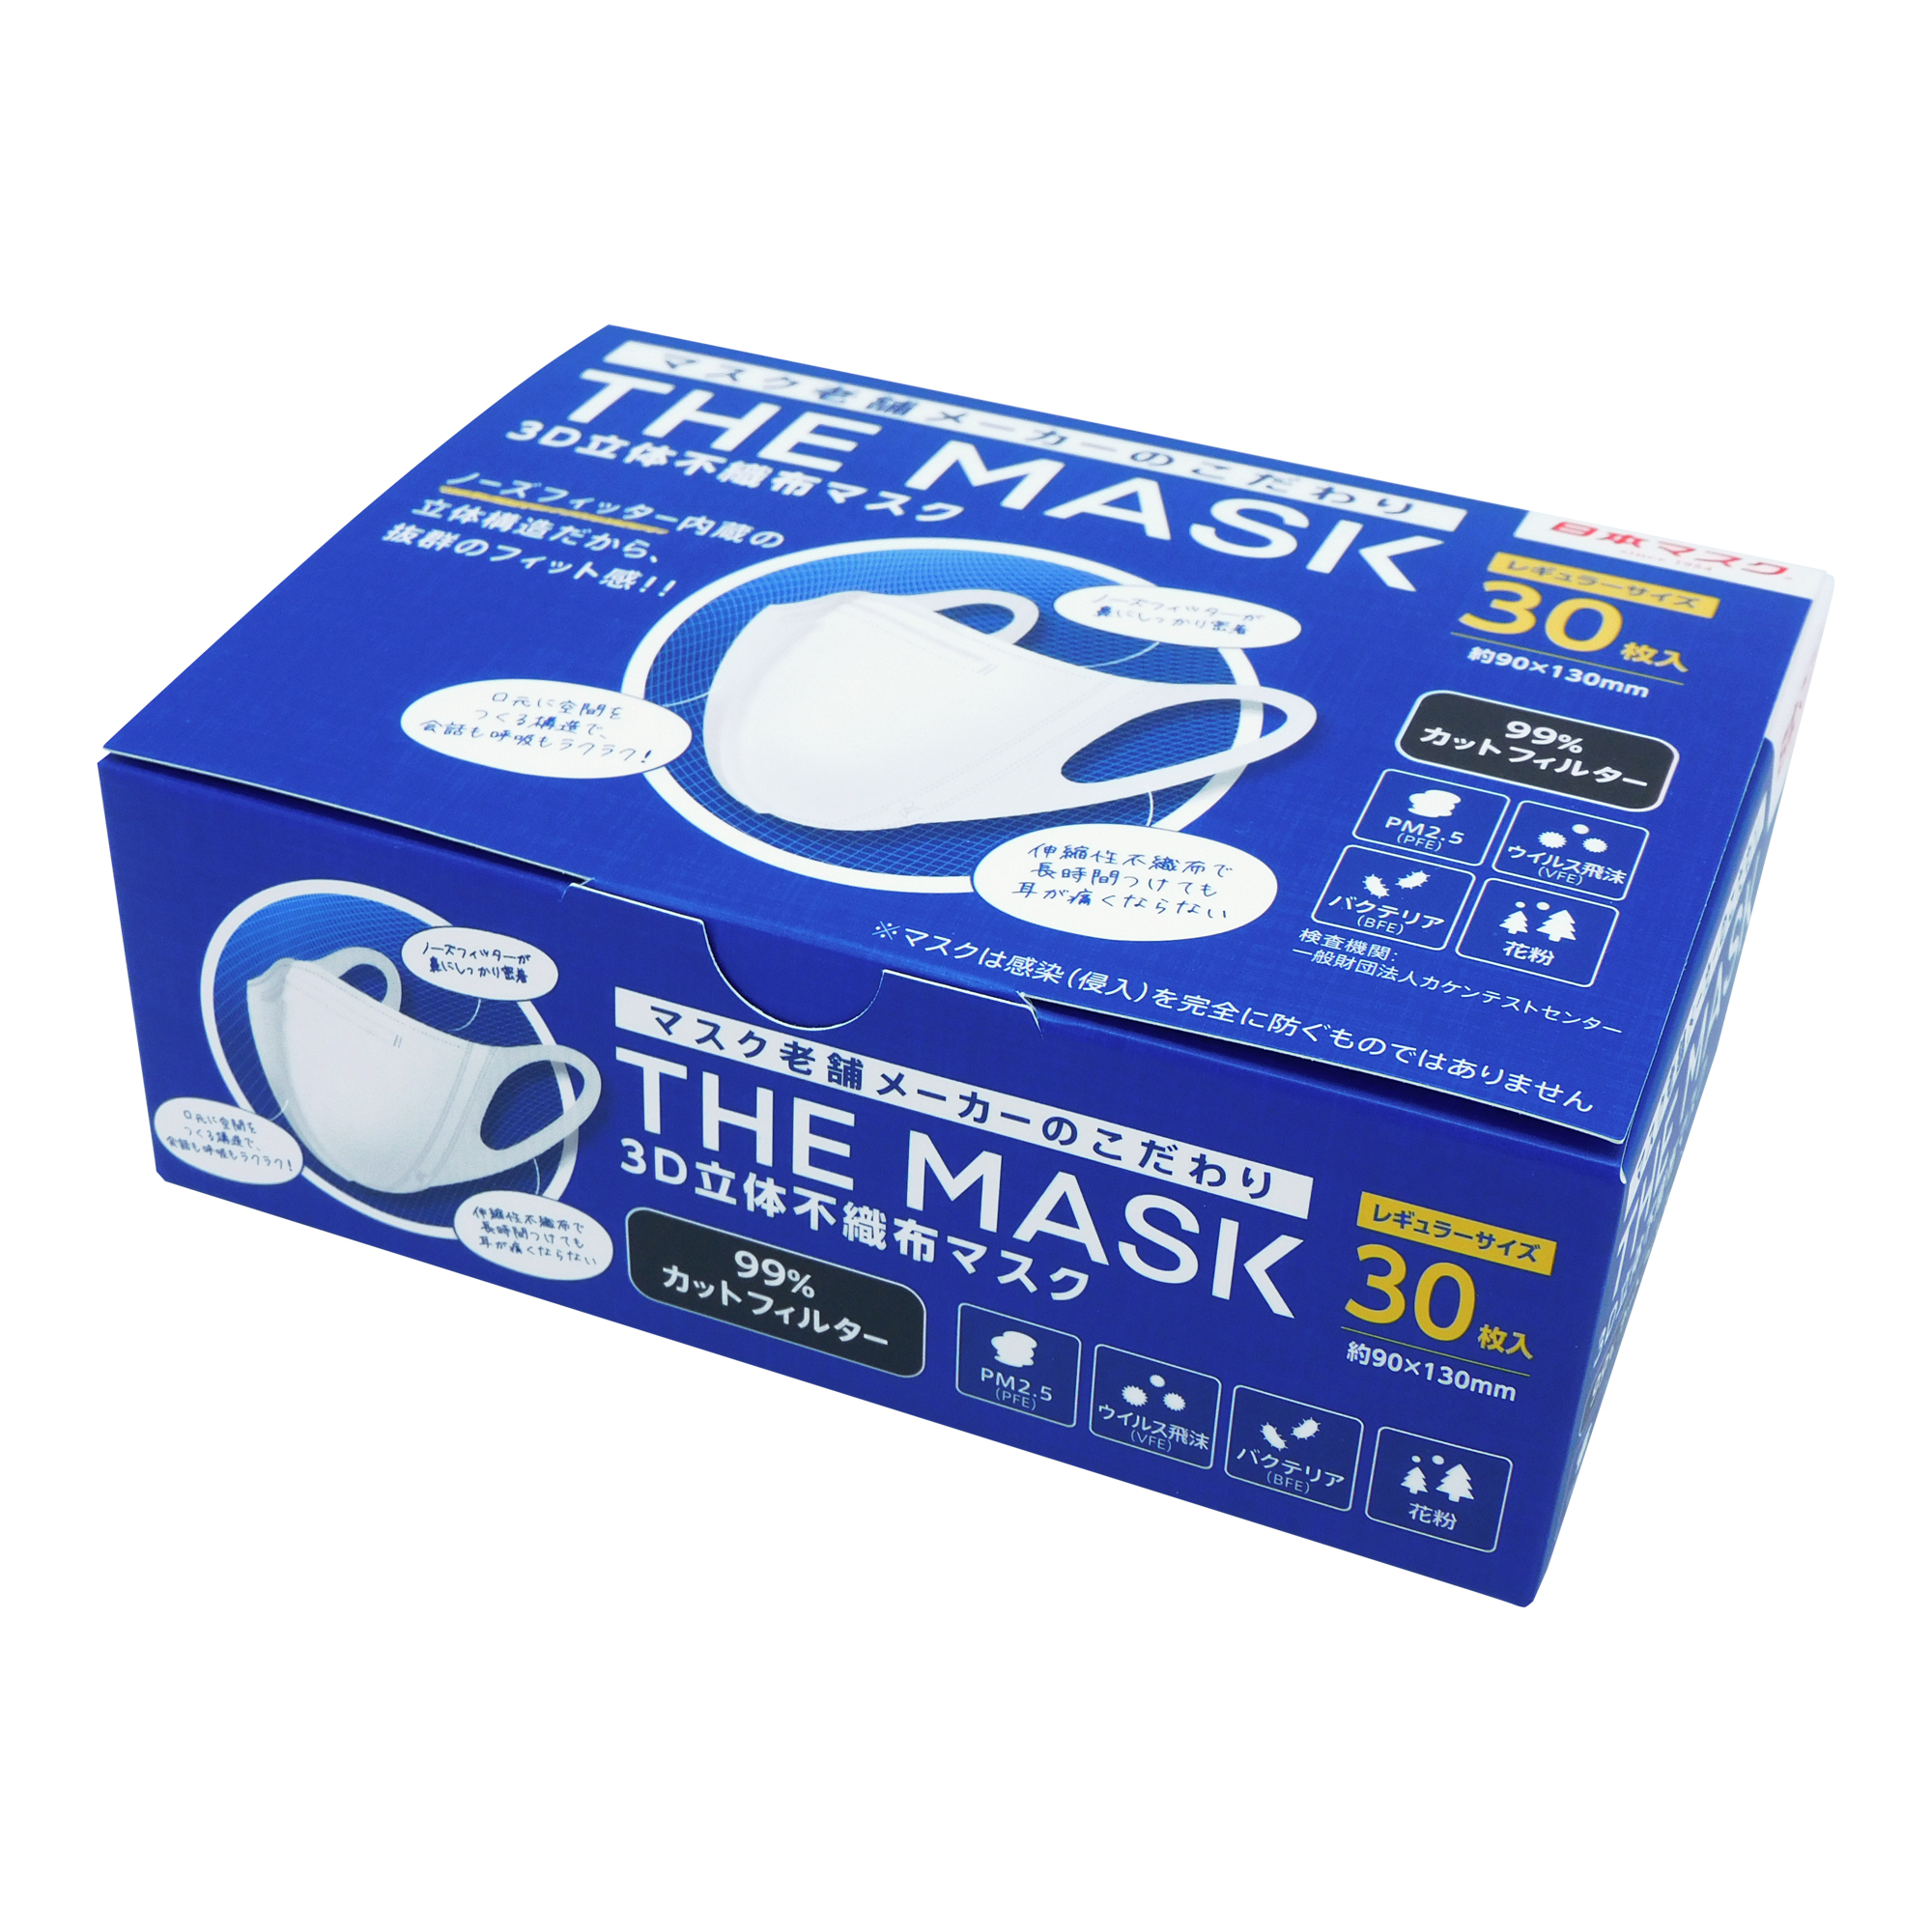 マスク老舗メーカーのこだわり
「THE MASK 3D立体不織布マスク30P」を
2021年8月中旬に新発売